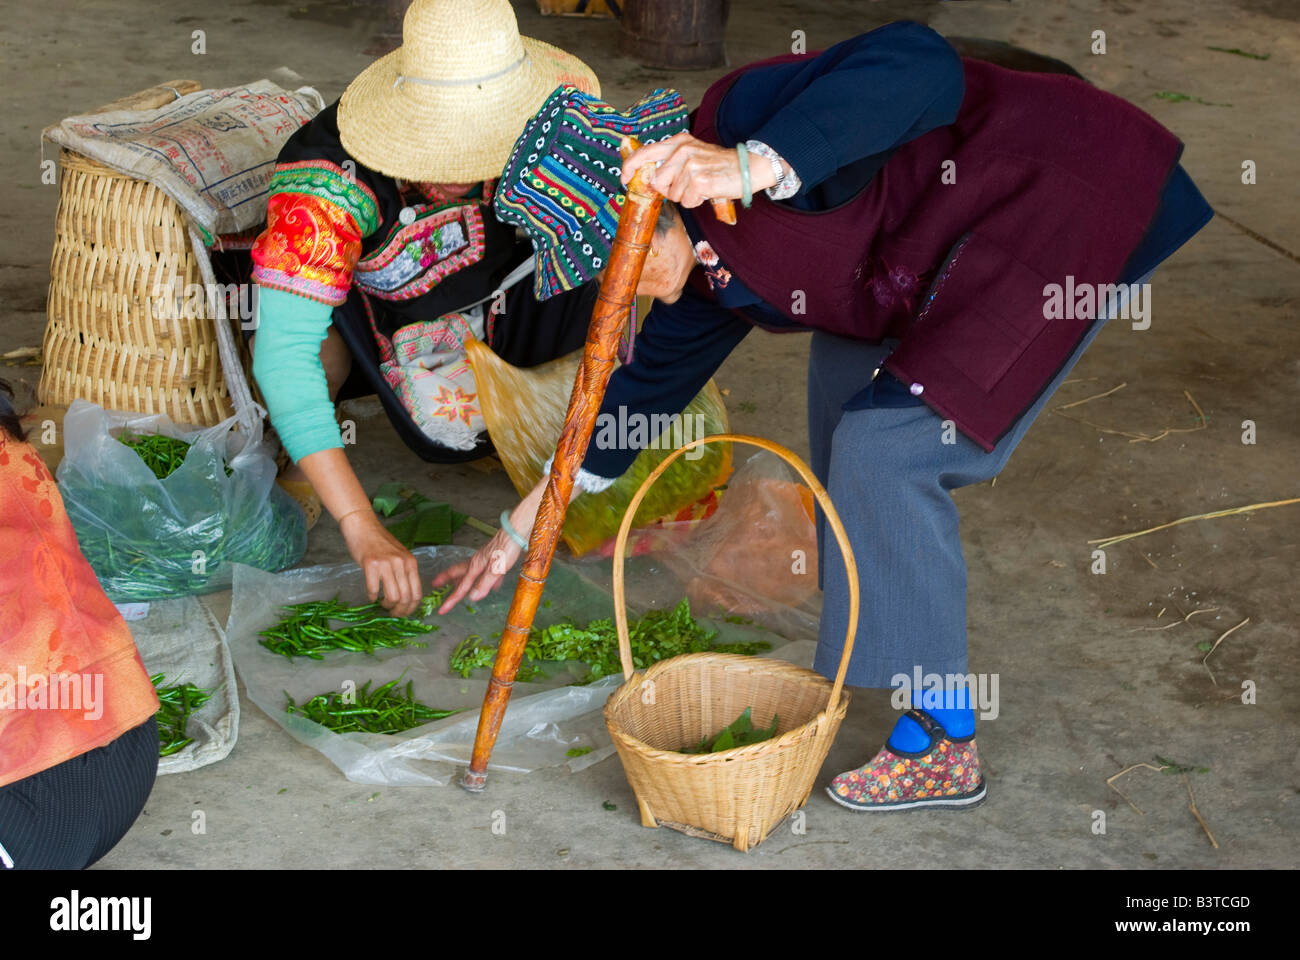 L'Asie, Chine, Province du Yunnan, Yuanyang. Vieille Femme avec les pieds liés à des boutiques d'herbes fraîches à Xinjie marché (vieux Yuanyang). Banque D'Images